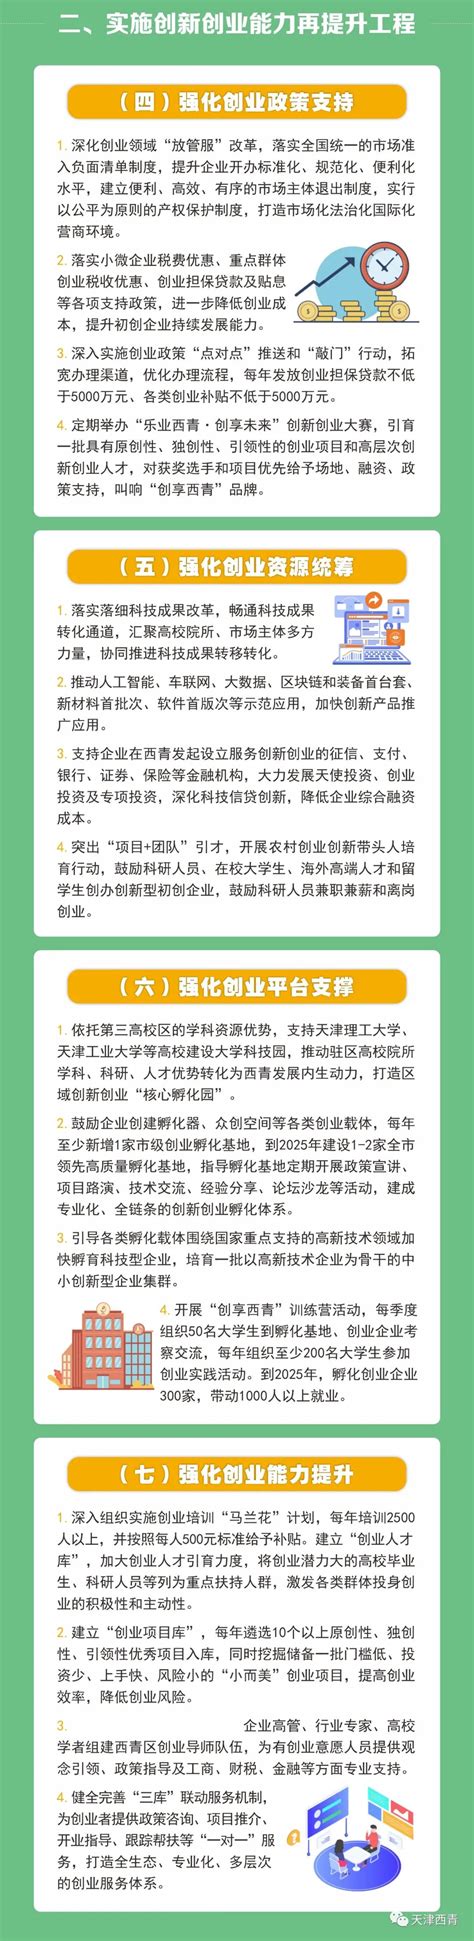 一图读懂丨西青区“乐业西青”行动实施方案 - 西青要闻 - 天津市西青区人民政府